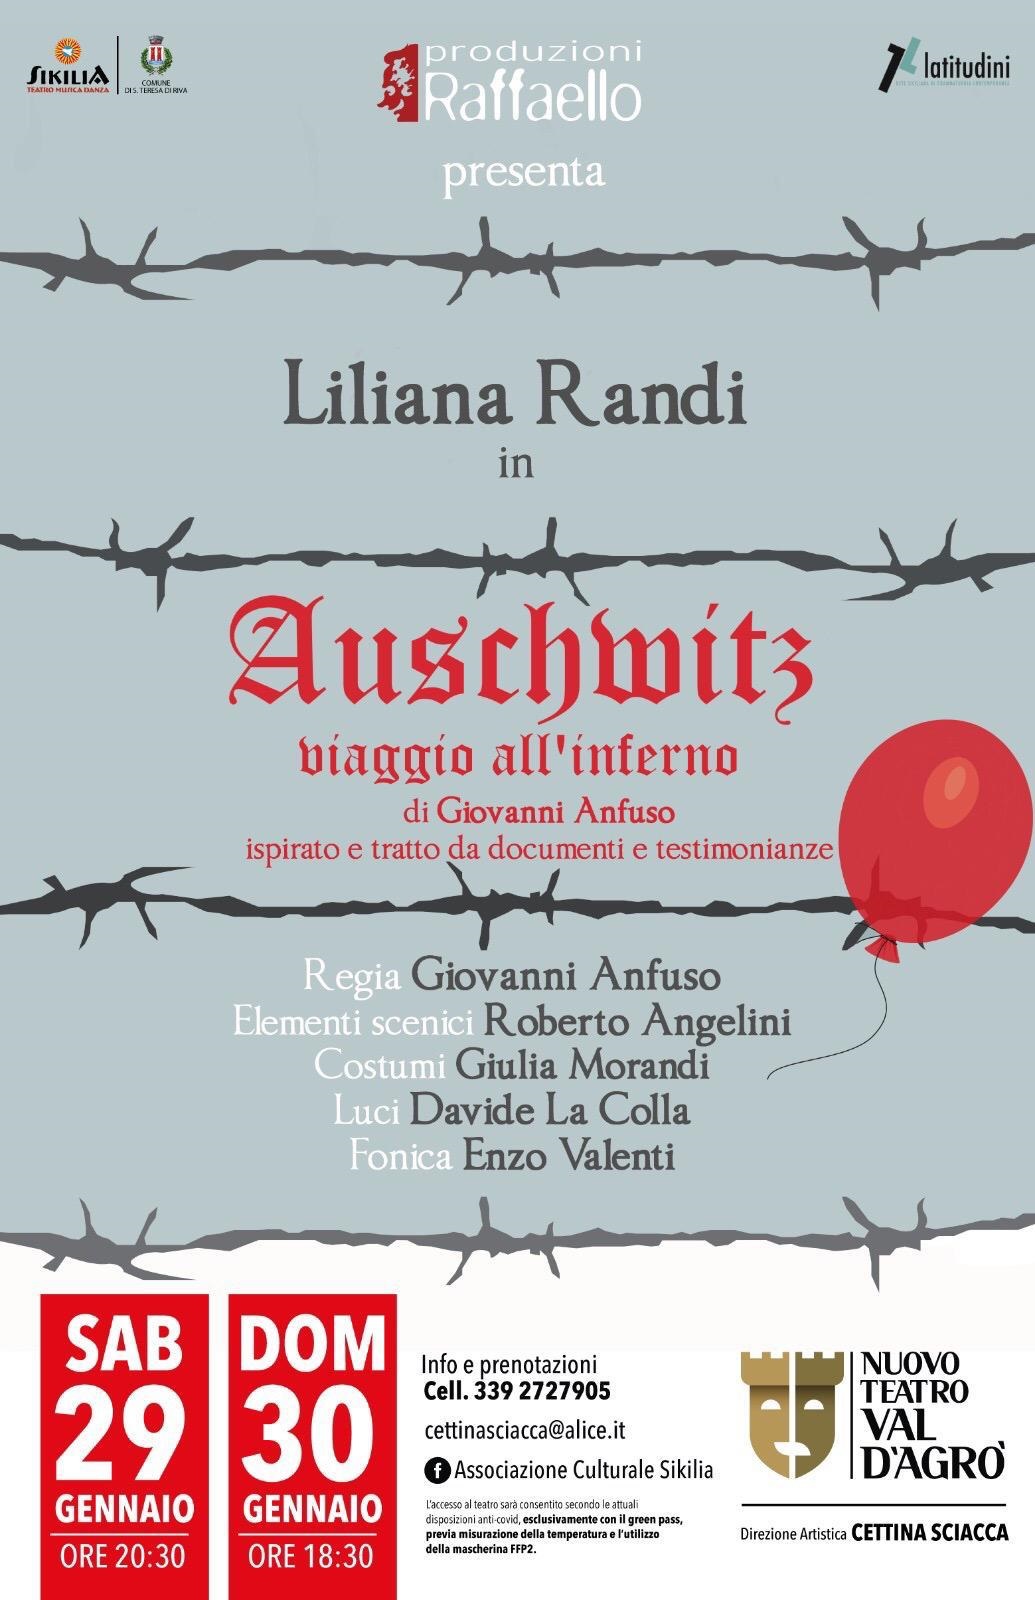 Teatro, Giorno della memoria: in Sicilia il monologo “Auschwitz: viaggio all’inferno”